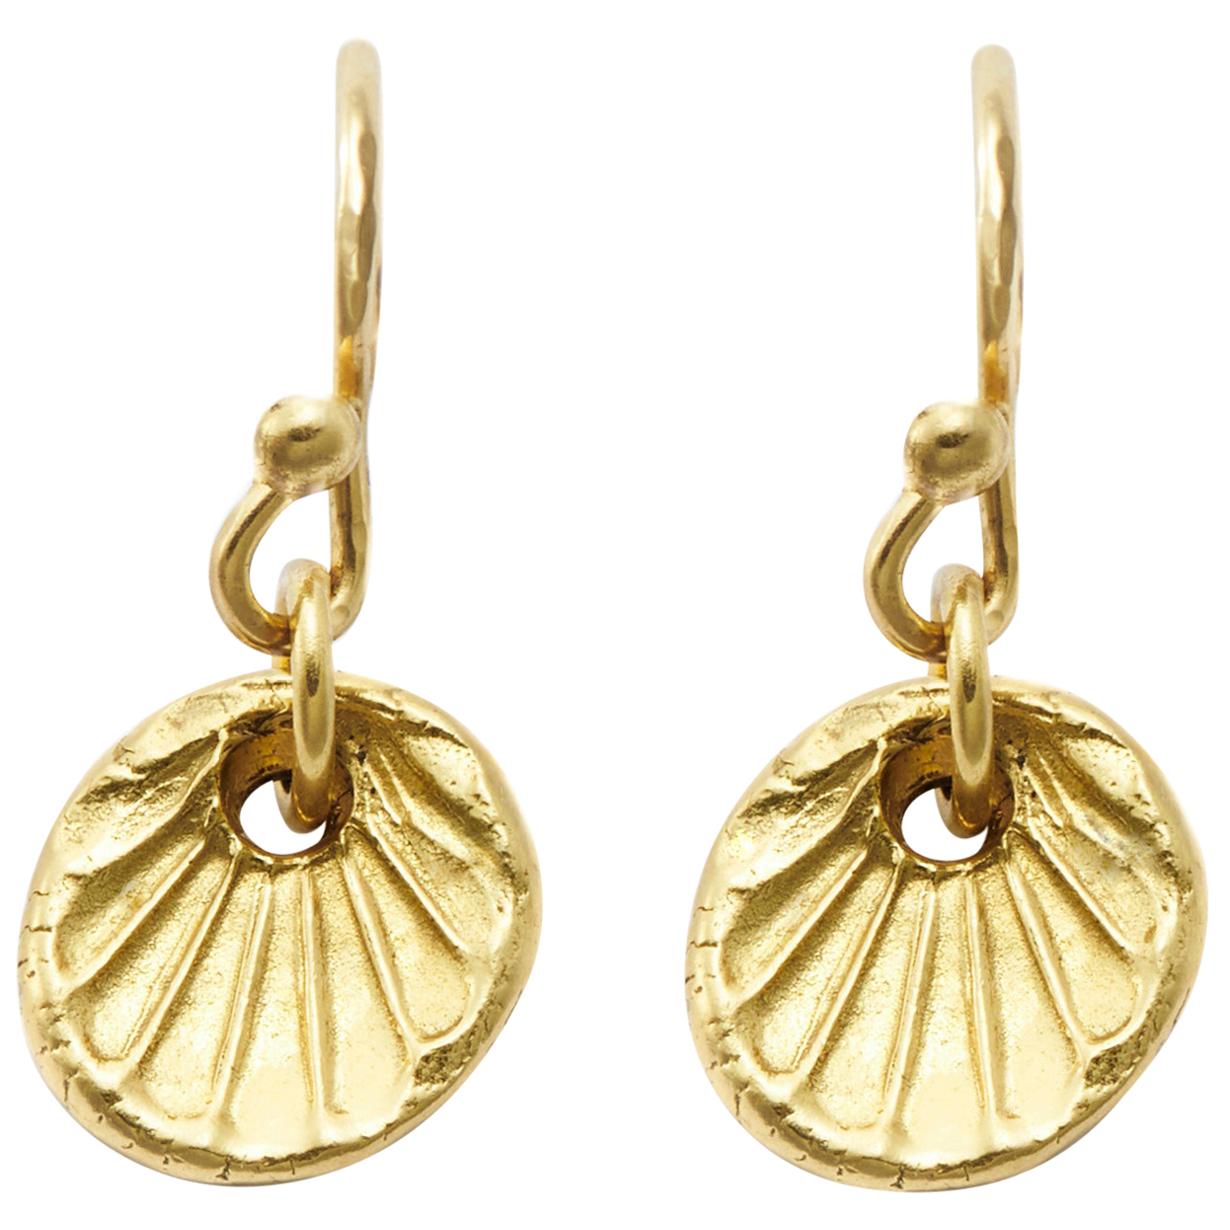 Susan Lister Locke Scallop Shell Drop Earrings in 18 Karat Gold For Sale